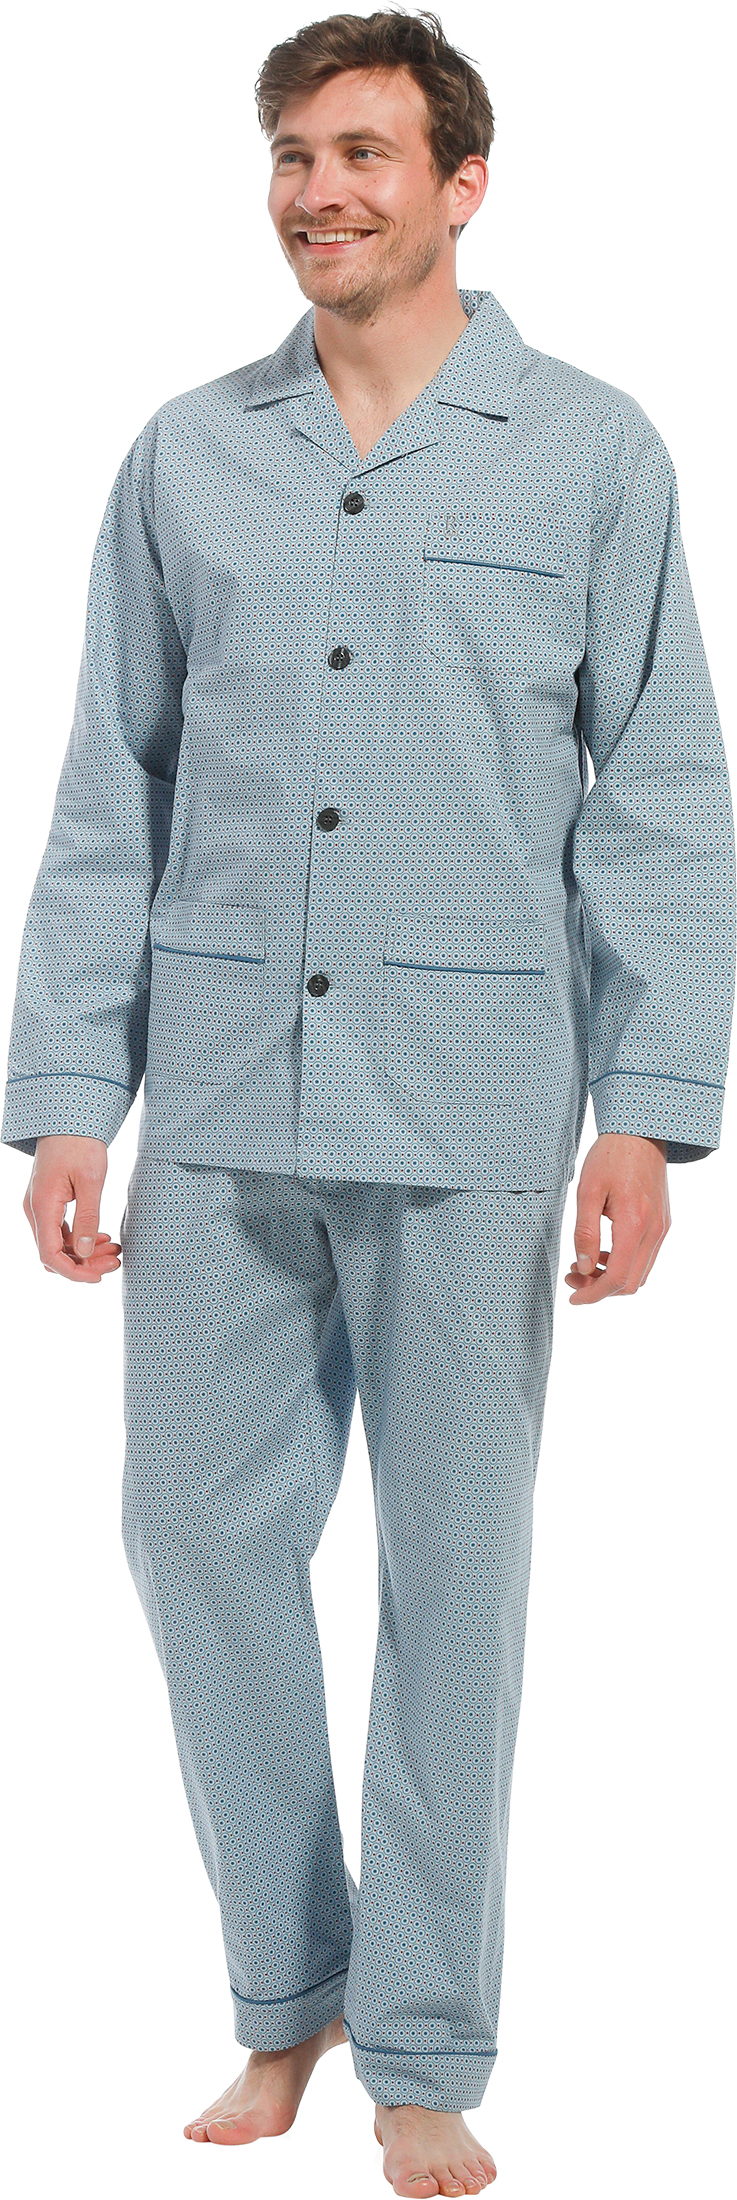 Robson heren pyjama doorknoop 27221-700-6 - Blauw - S/48